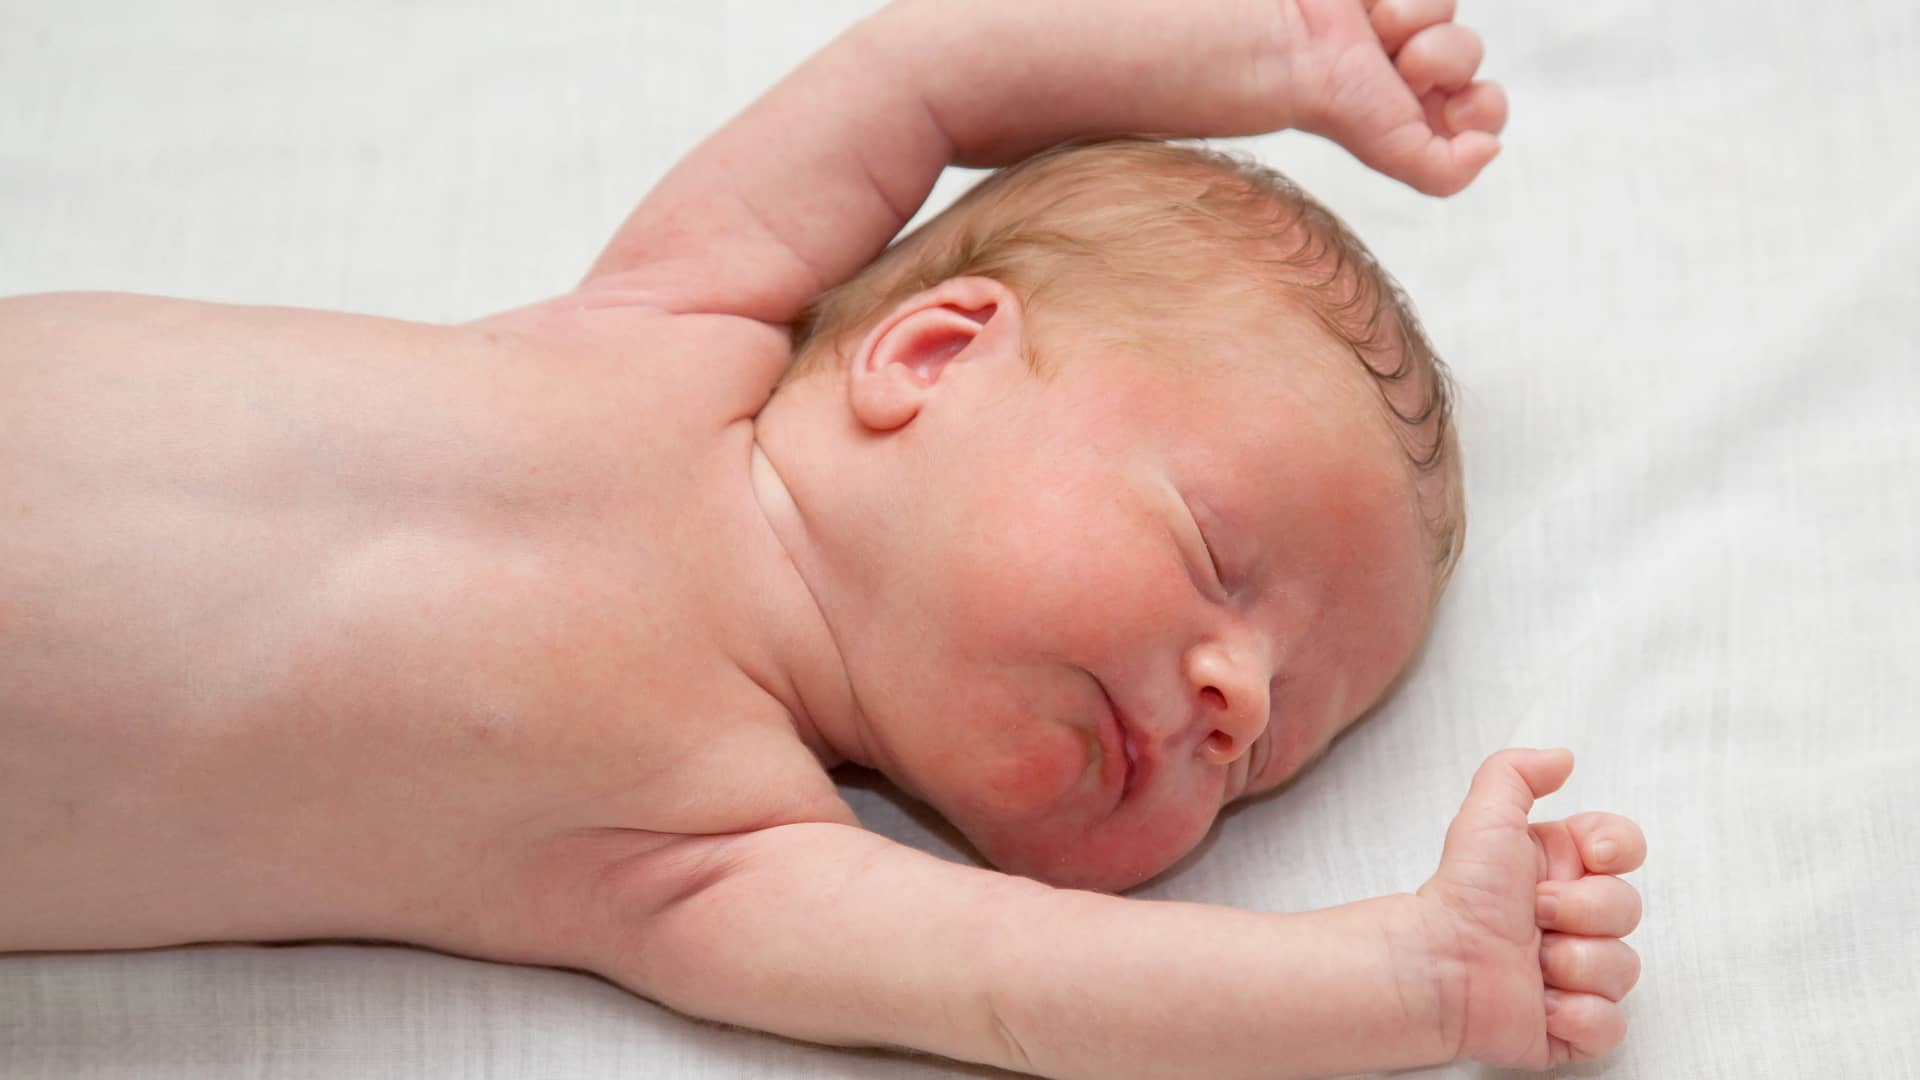 un bebe delgado sin masa muscular que padece hipotonia